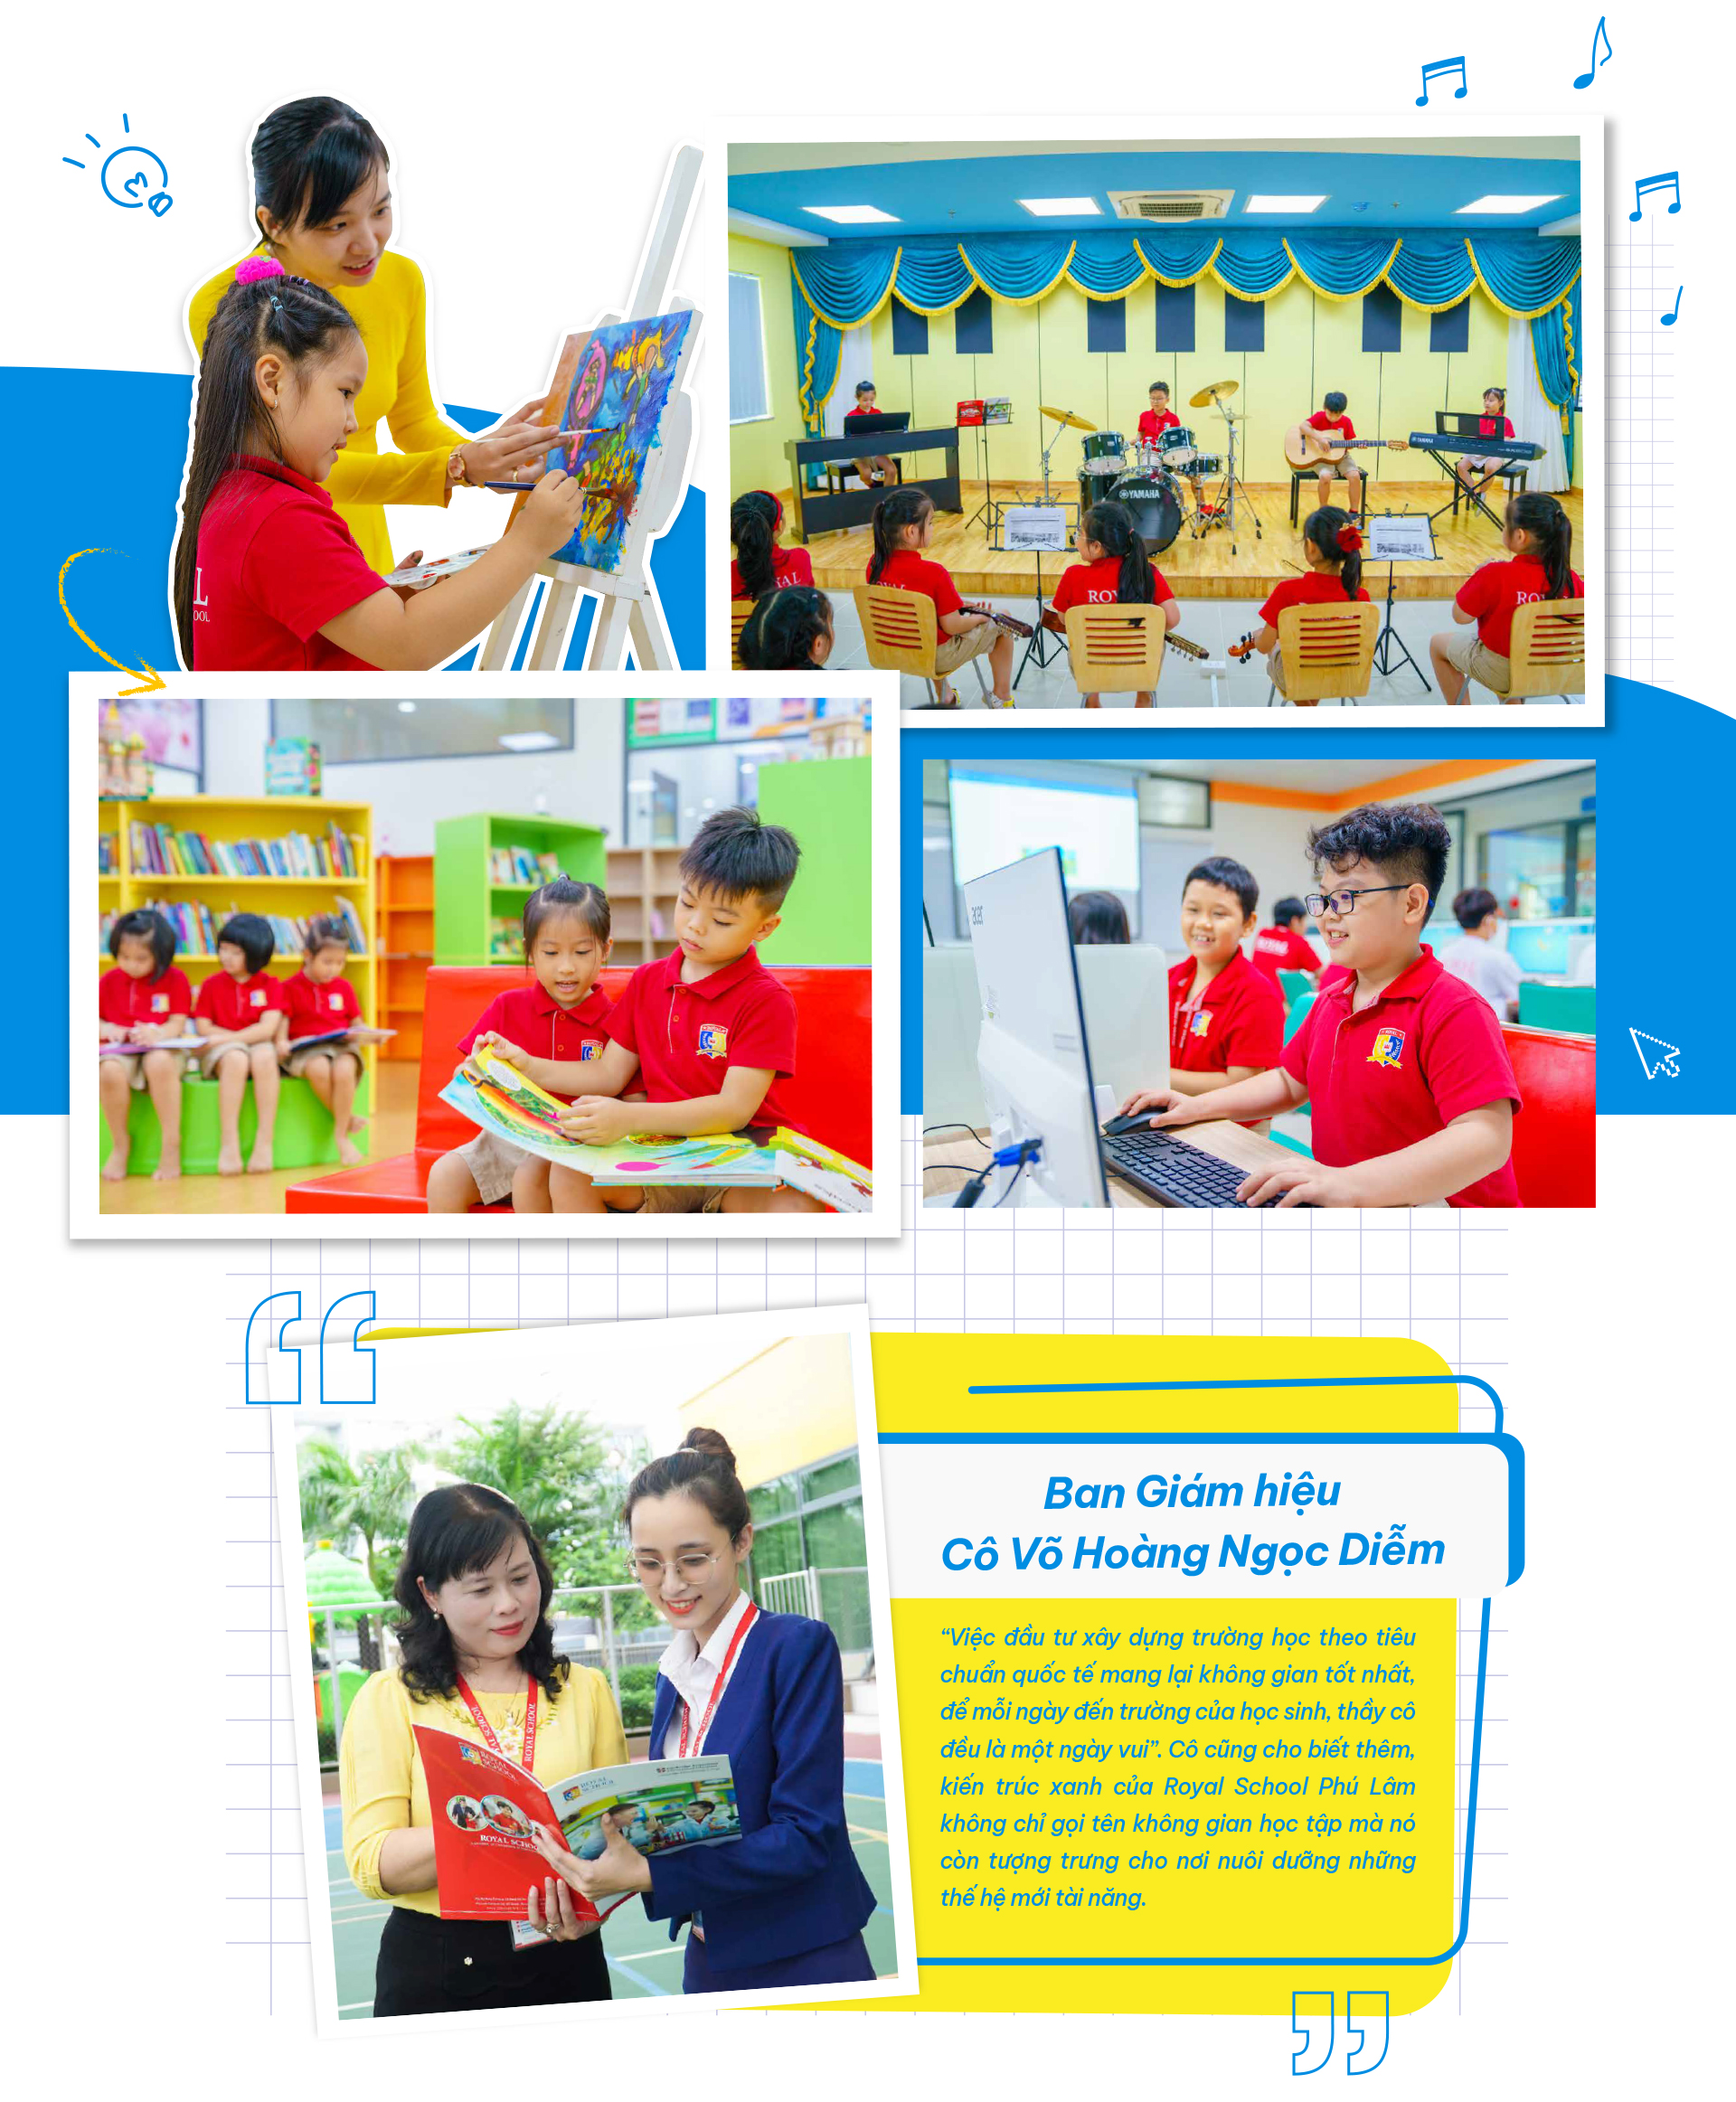 Cảm hứng từ không gian xanh, phòng học ‘chuẩn Tây’ của Royal School Phú Lâm - Ảnh 5.